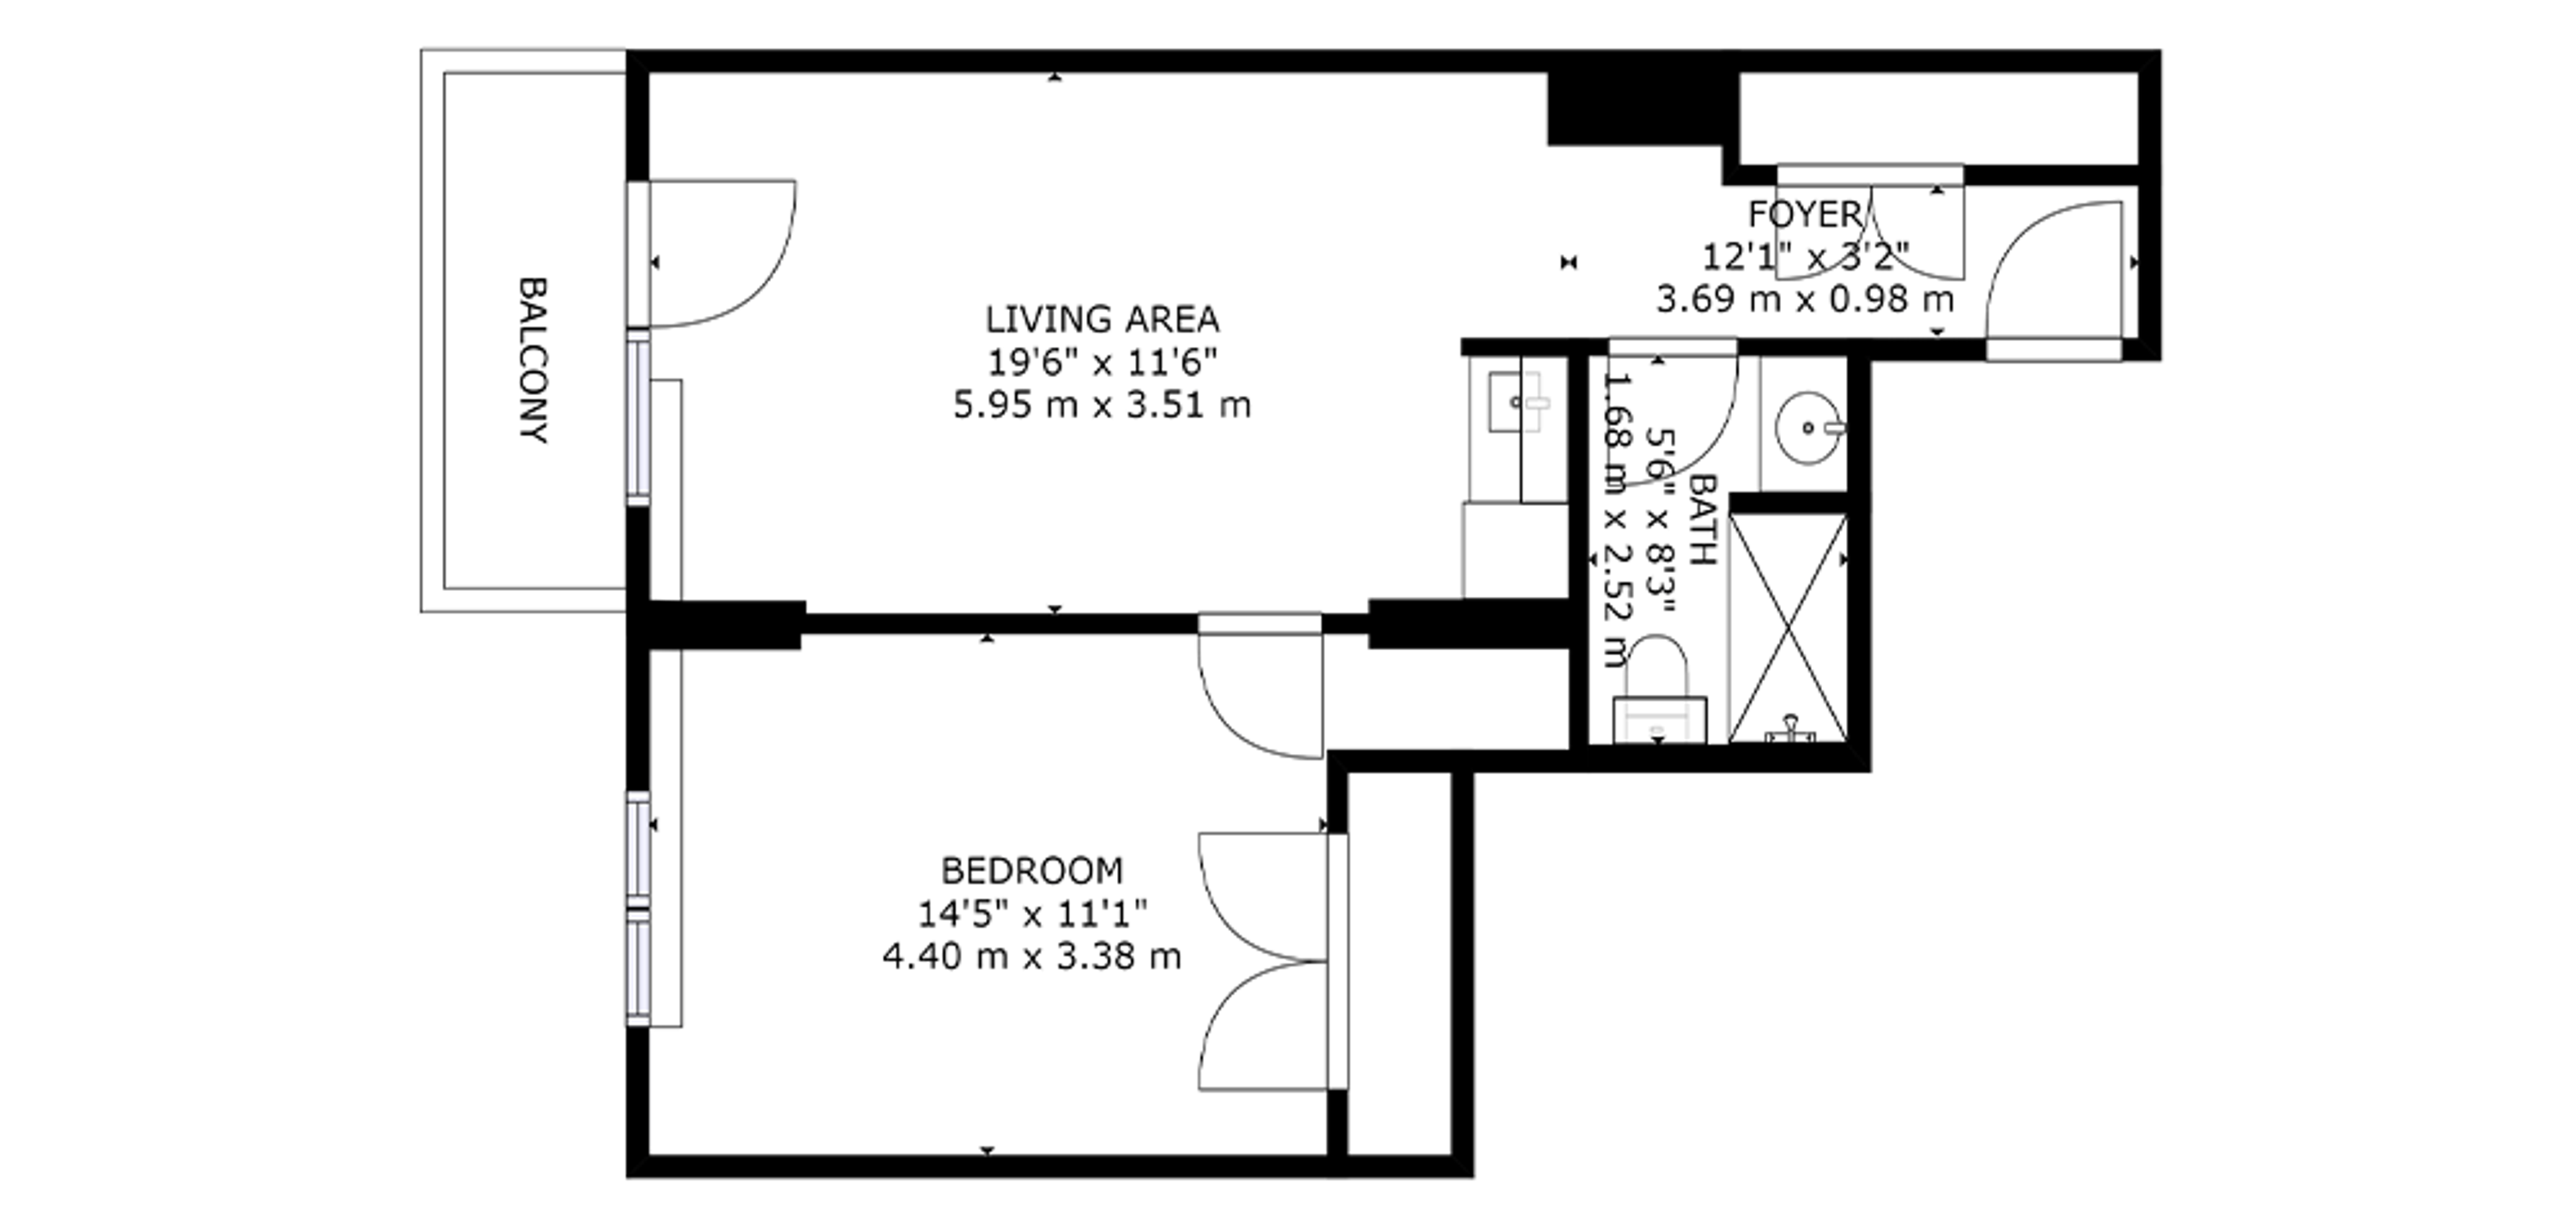 Sample 1 Bedroom Plan